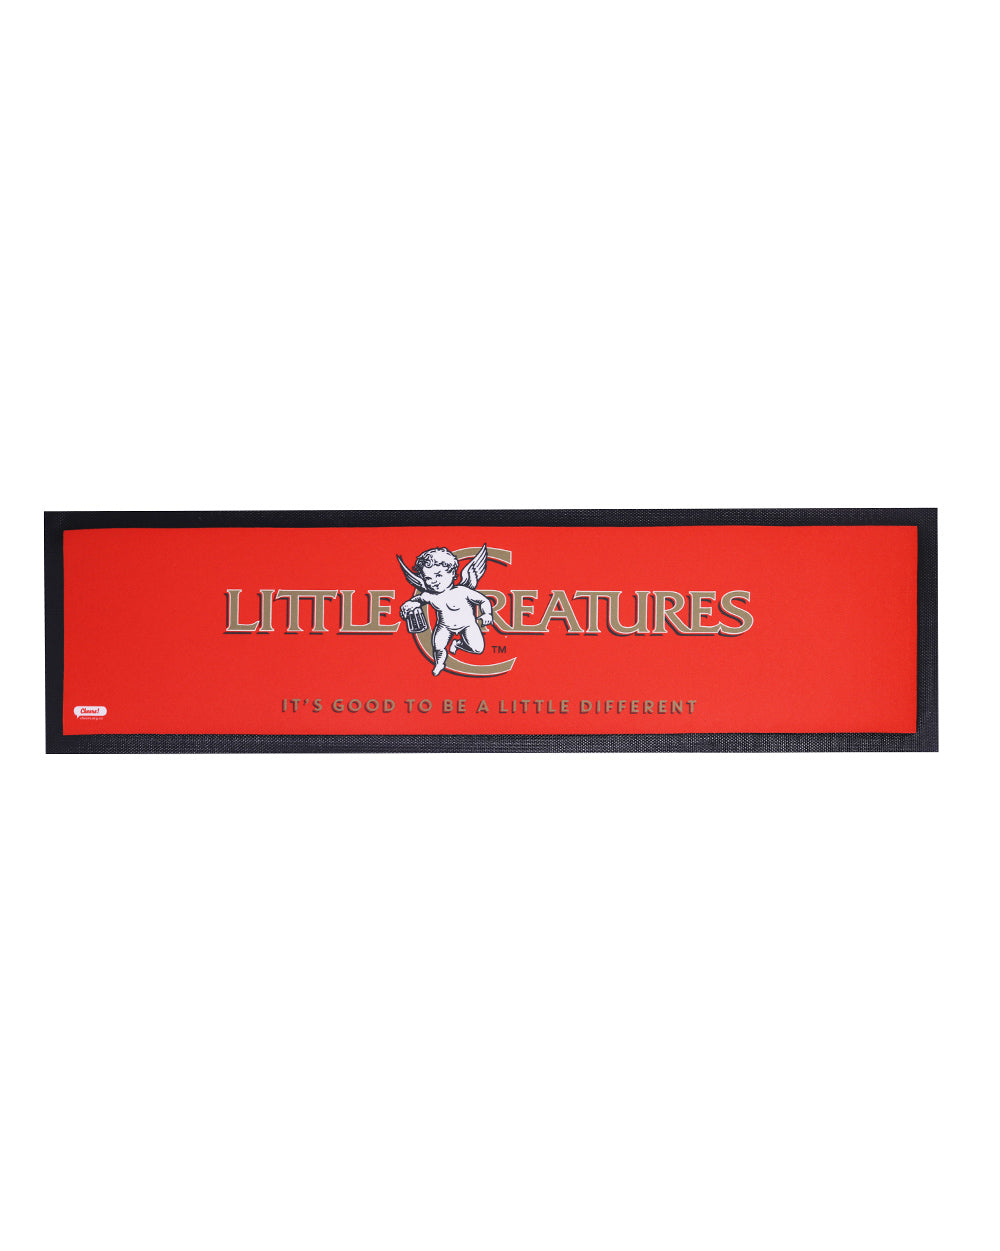 Little Creatures Rubber Bar Mat -  Beer Gear Apparel & Merchandise - Speights - Lion Red - VB - Tokyo Dy merch